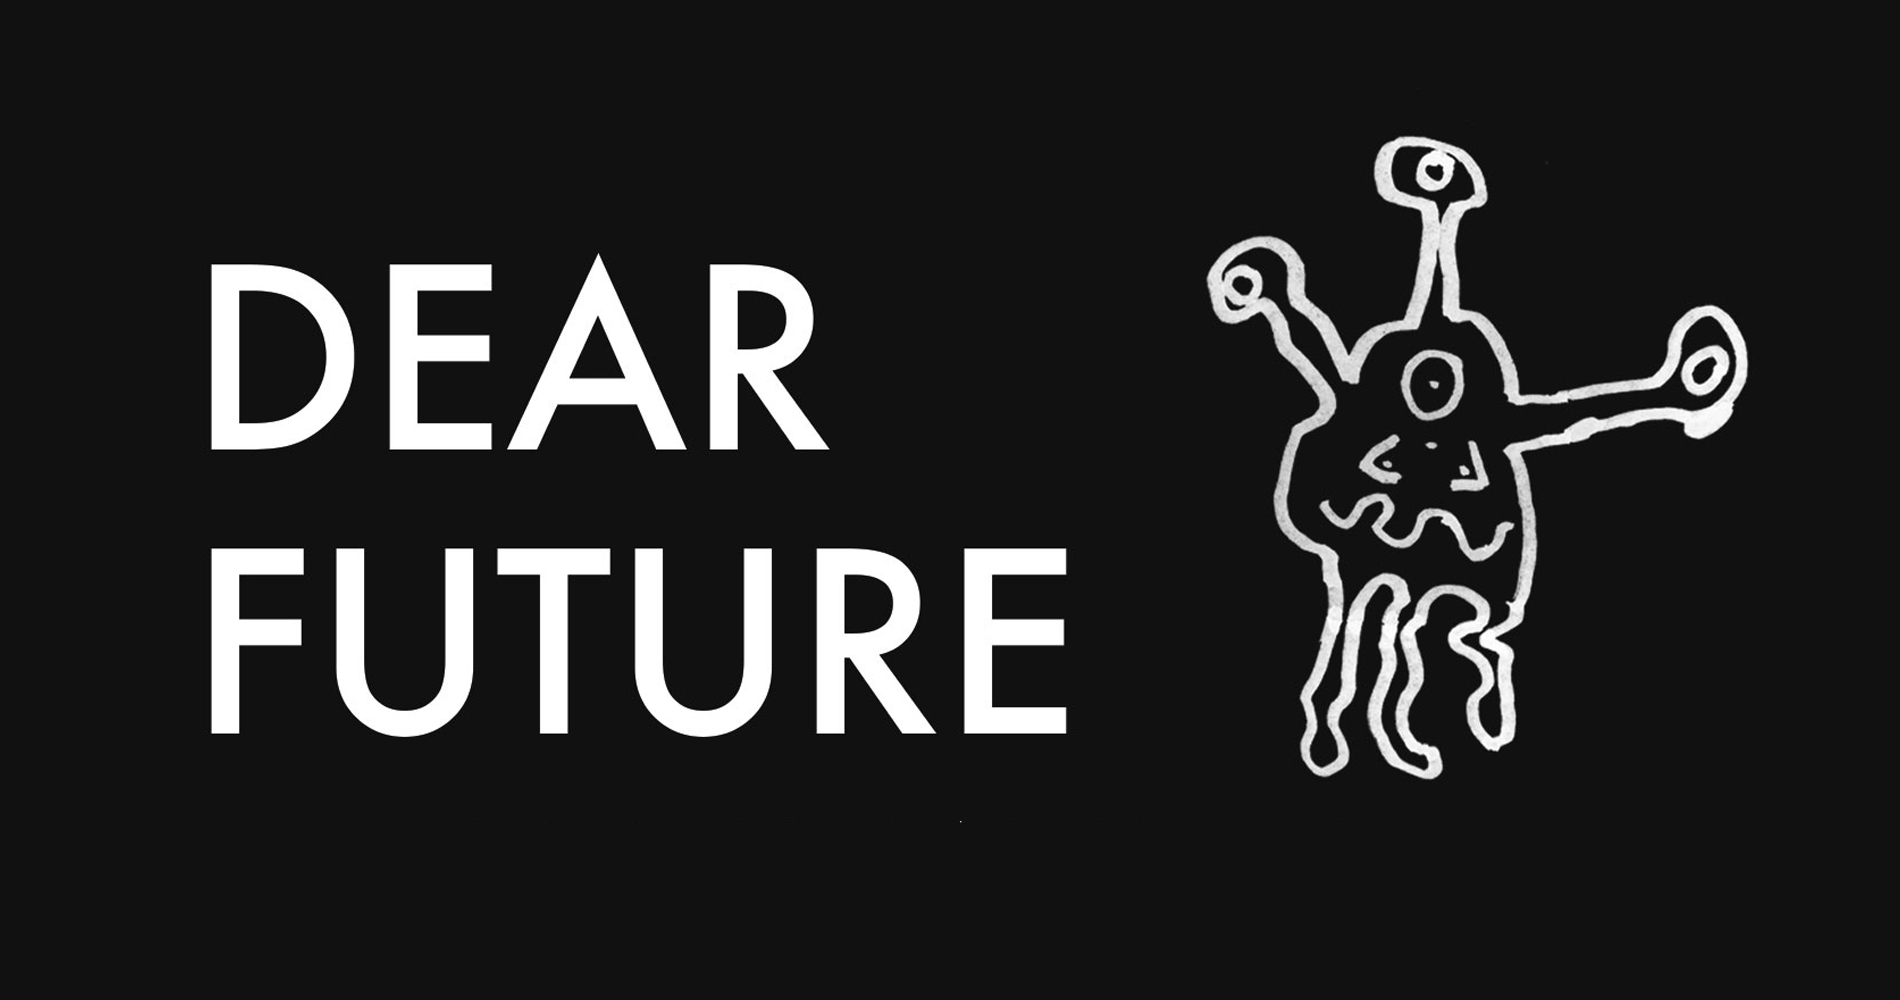 Dear Future Film Festival logo